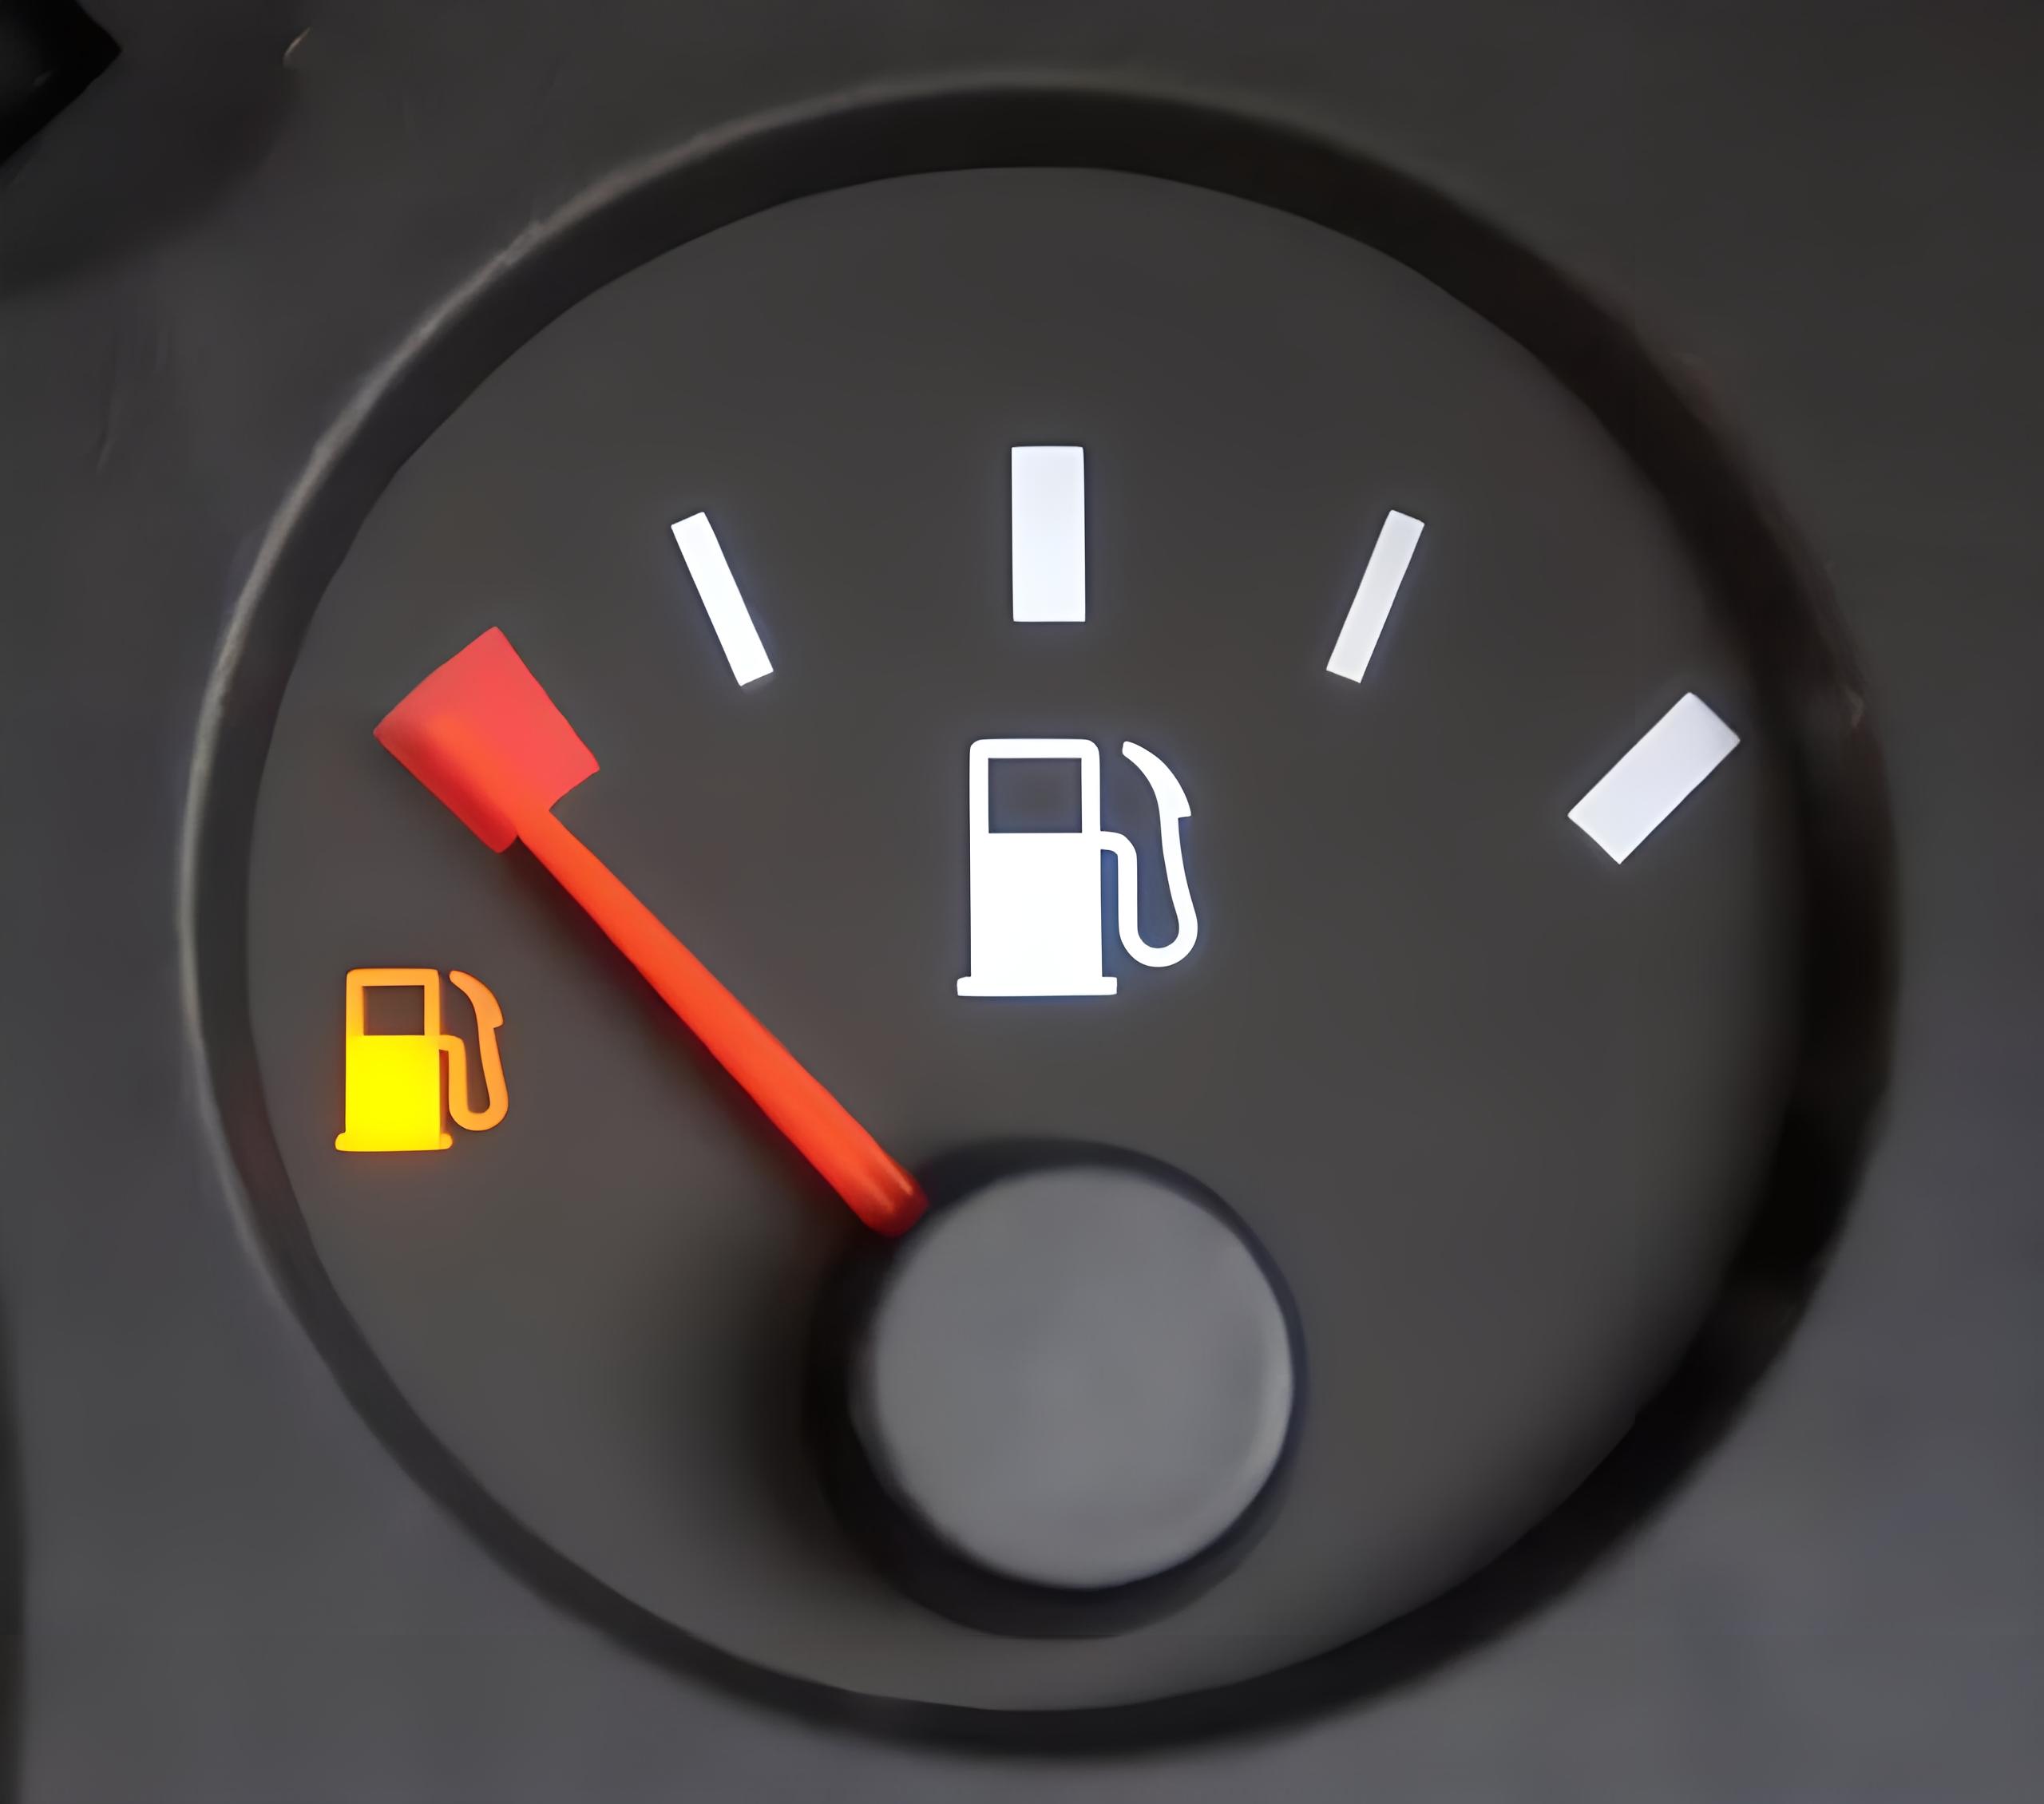 汽车油表灯亮了,还能开多少公里?老司机:记住这个数